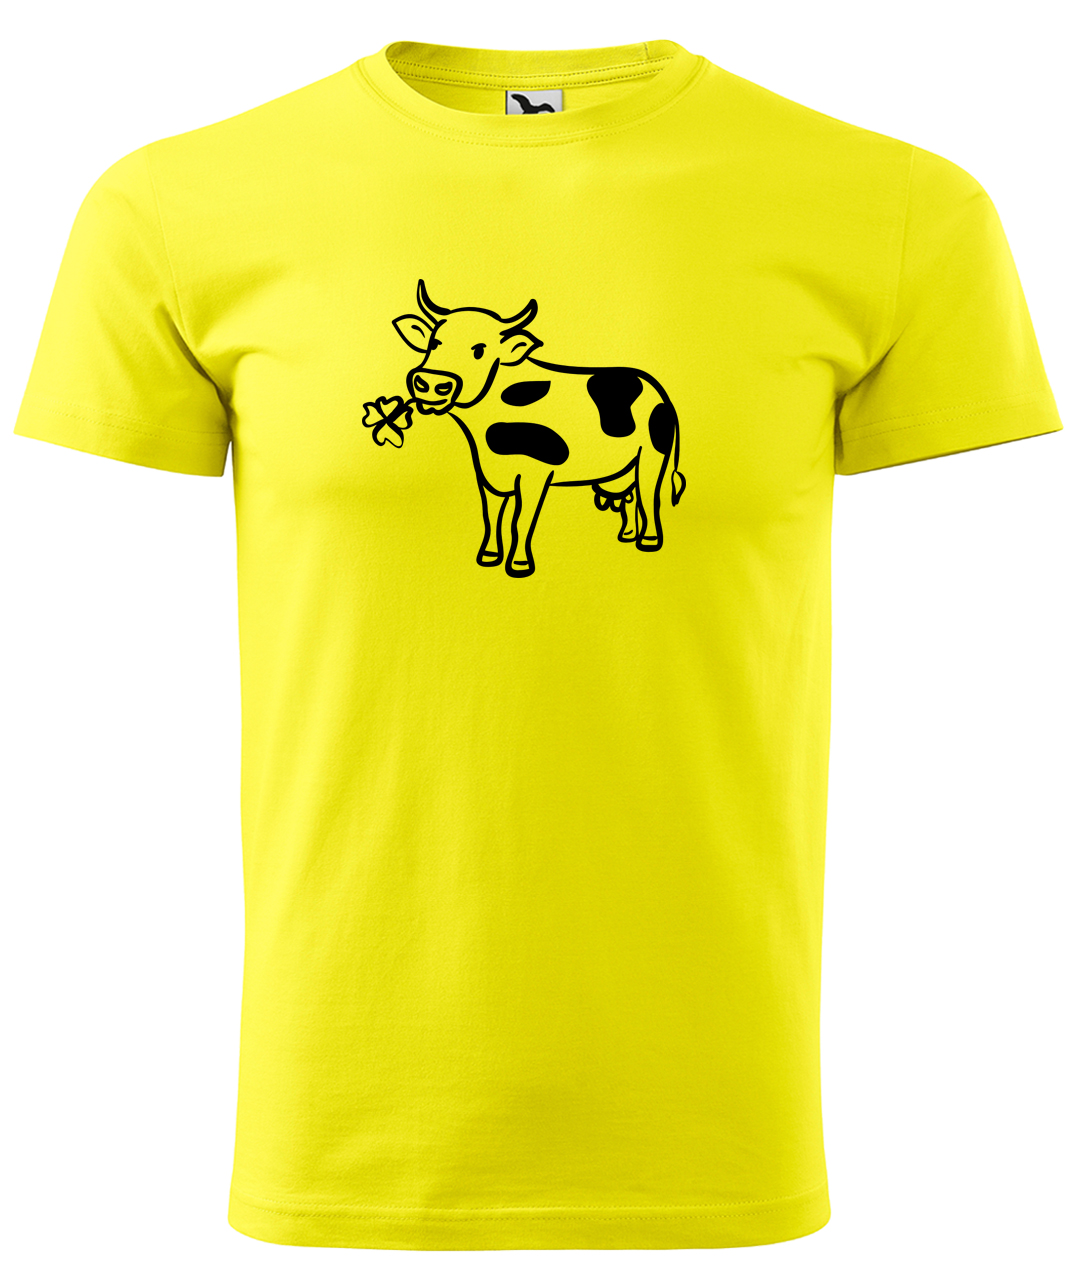 Dětské tričko s krávou - Kravička a jetel Velikost: 6 let / 122 cm, Barva: Žlutá (04), Délka rukávu: Krátký rukáv